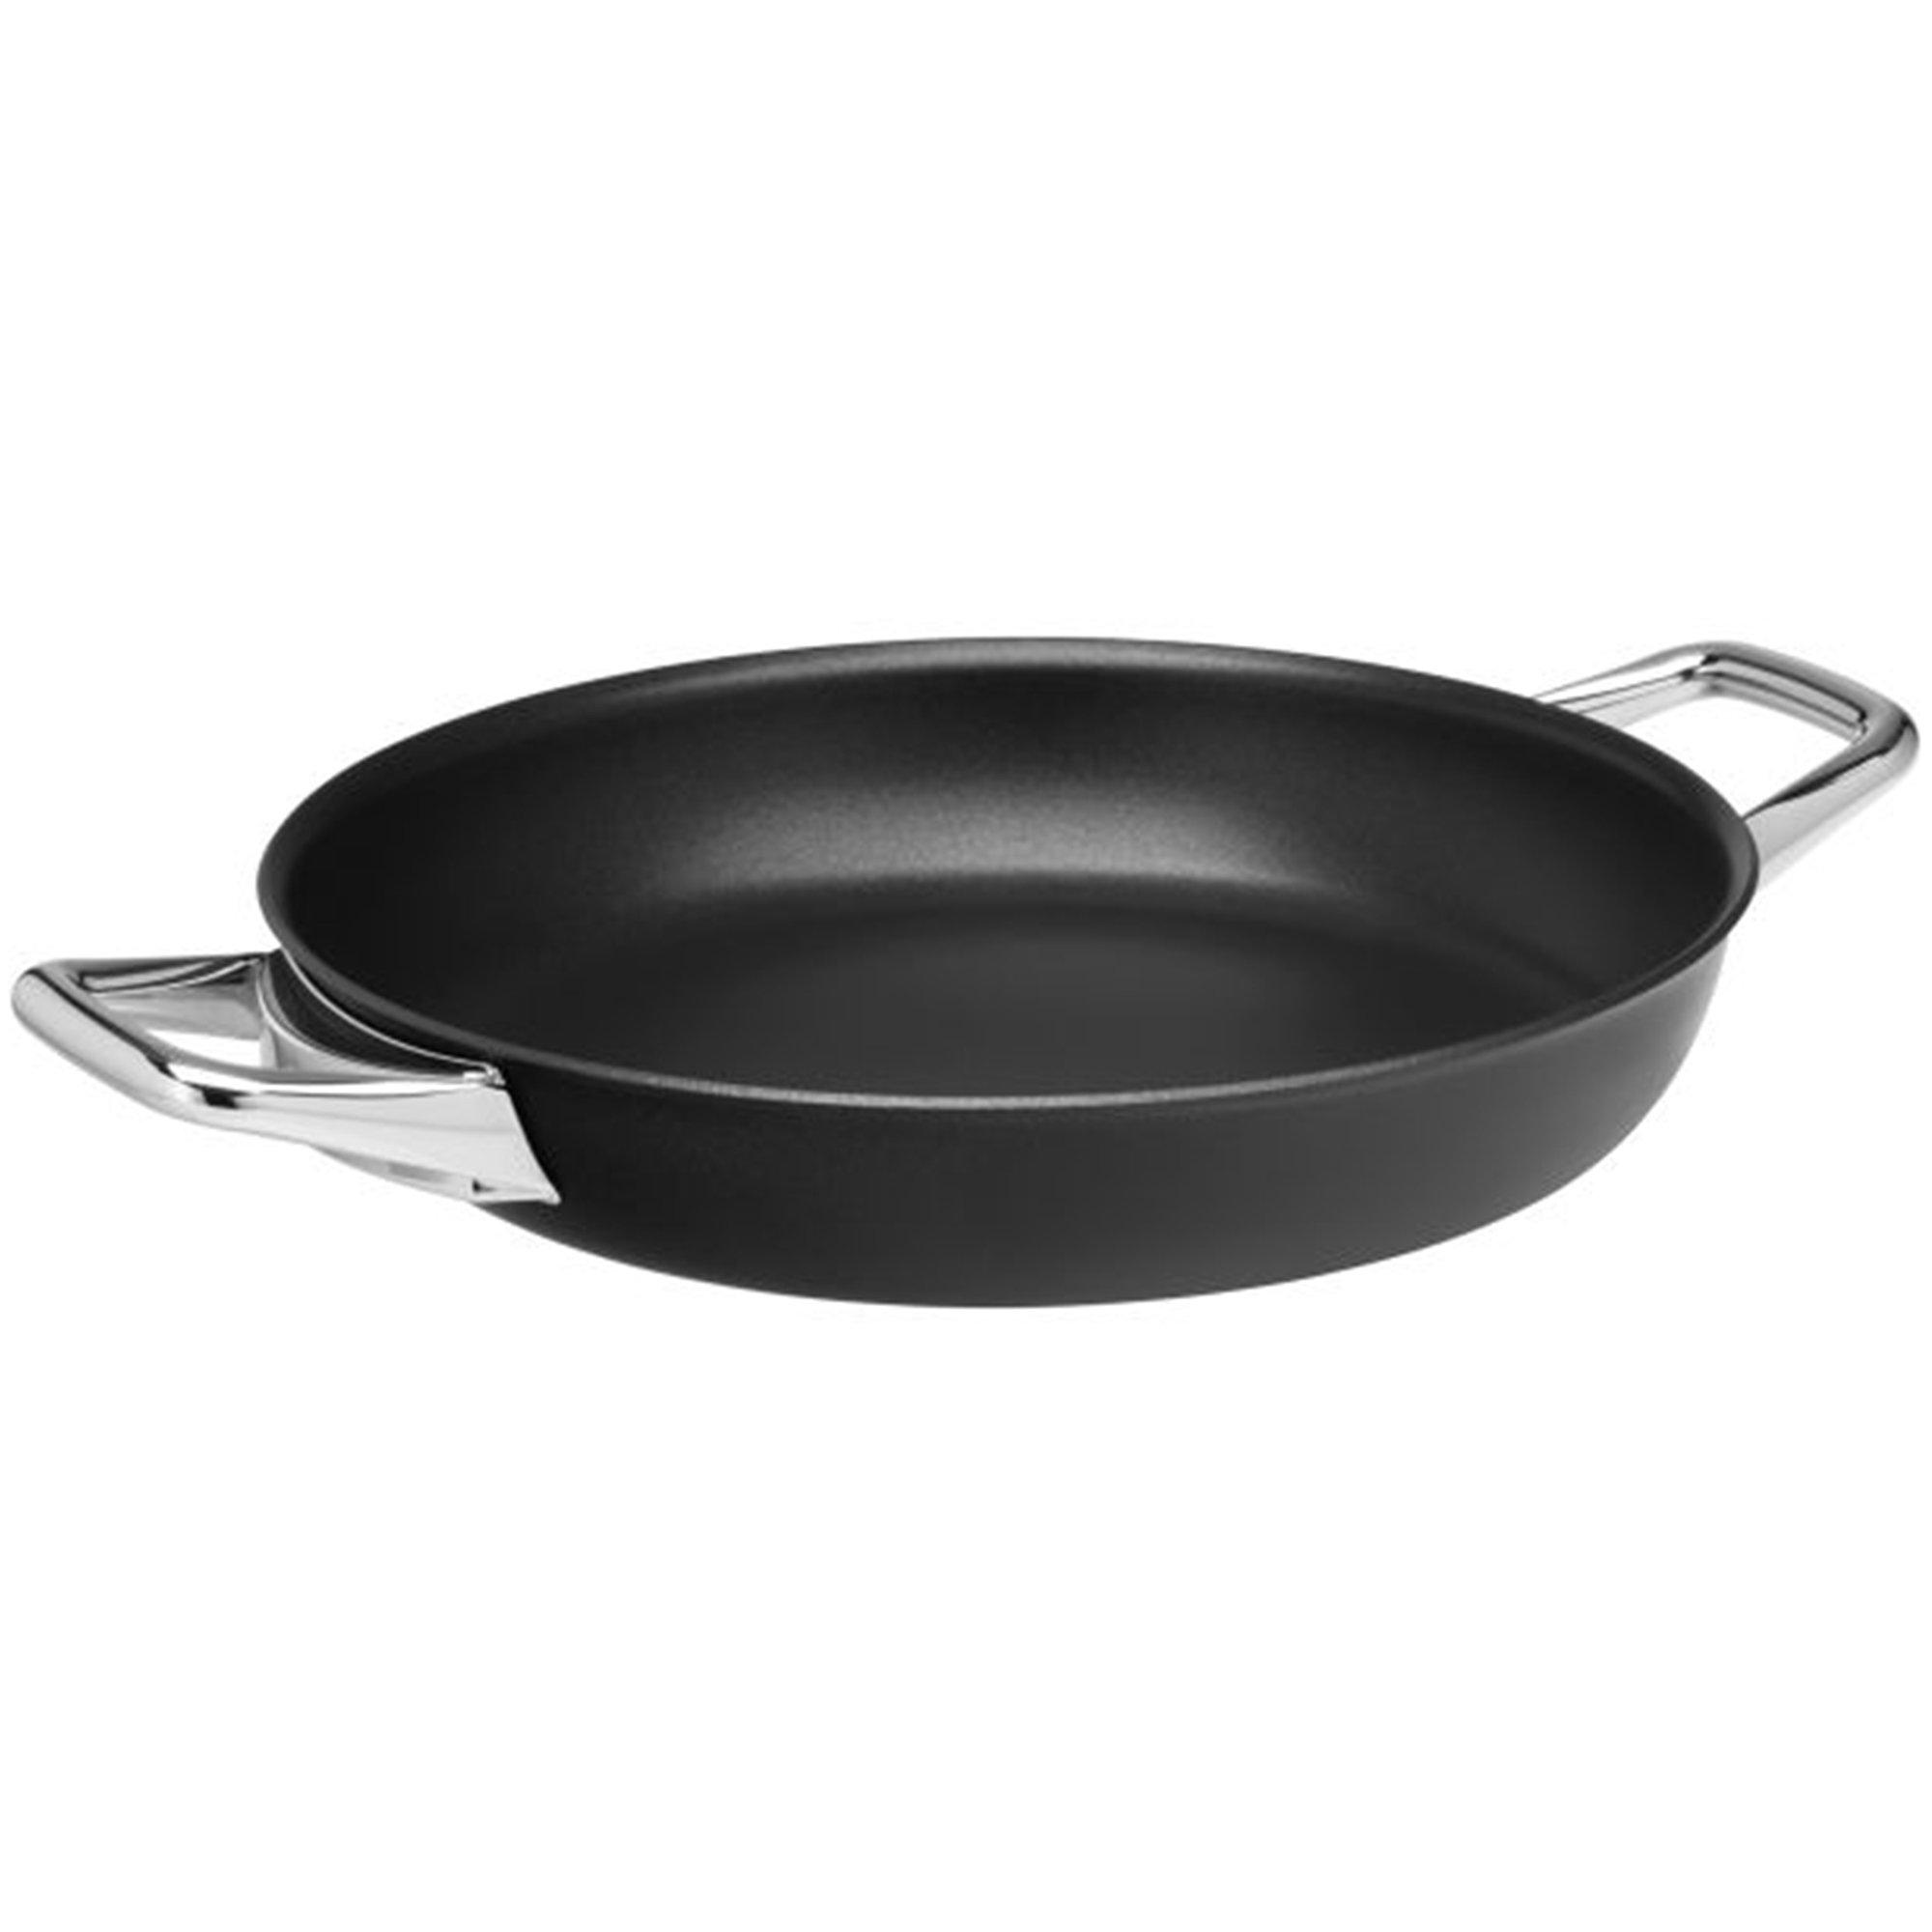 WMF Steak Profi Pan 1771386021 frying pan, 28 cm